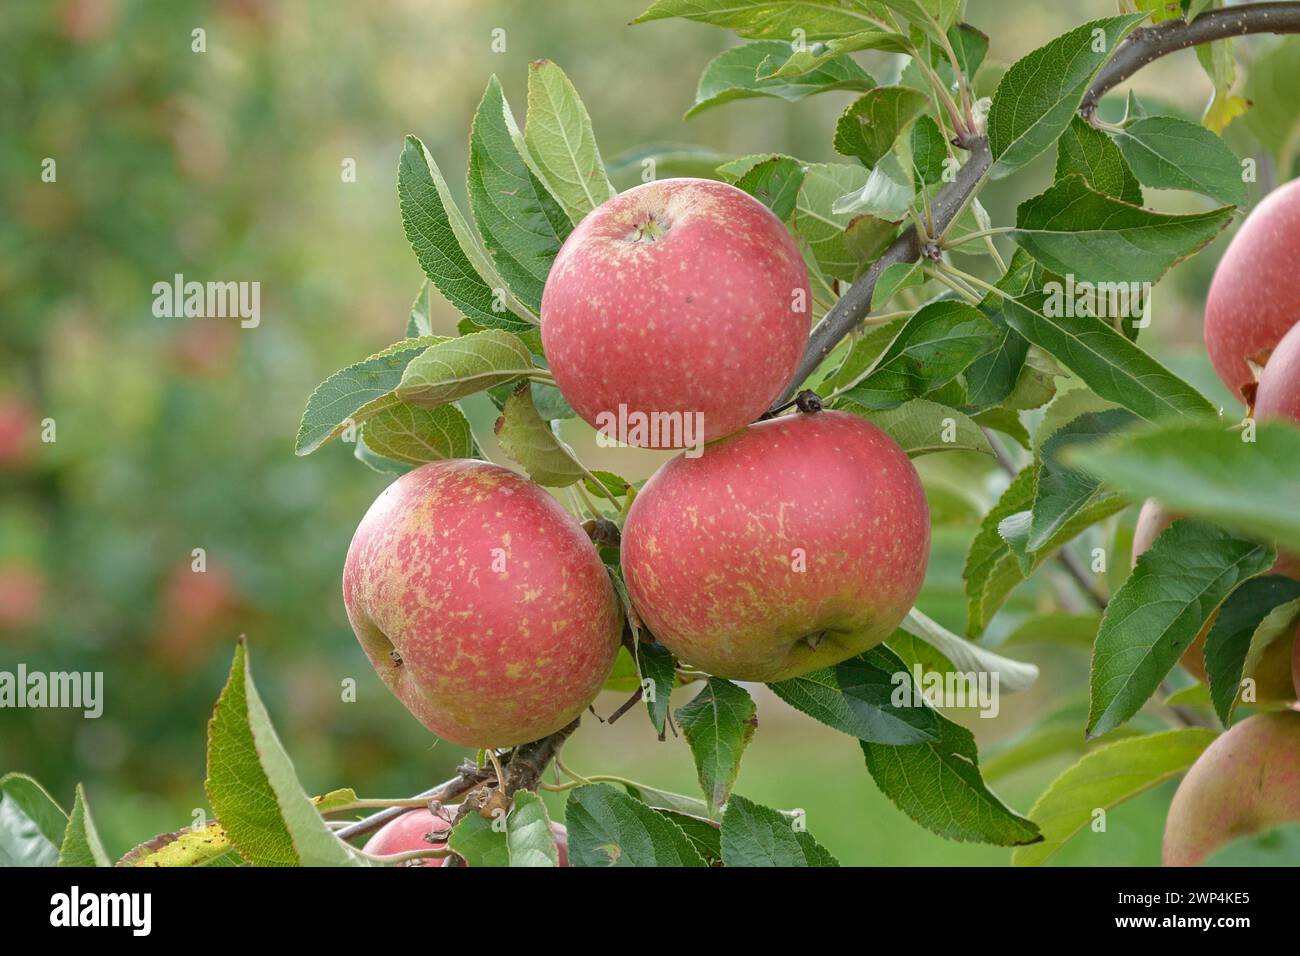 Apple (Malus domestica 'Margol'), Bundessortenamt Pruefstelle Wurzen, Wurzen, Saxony, Germany Stock Photo